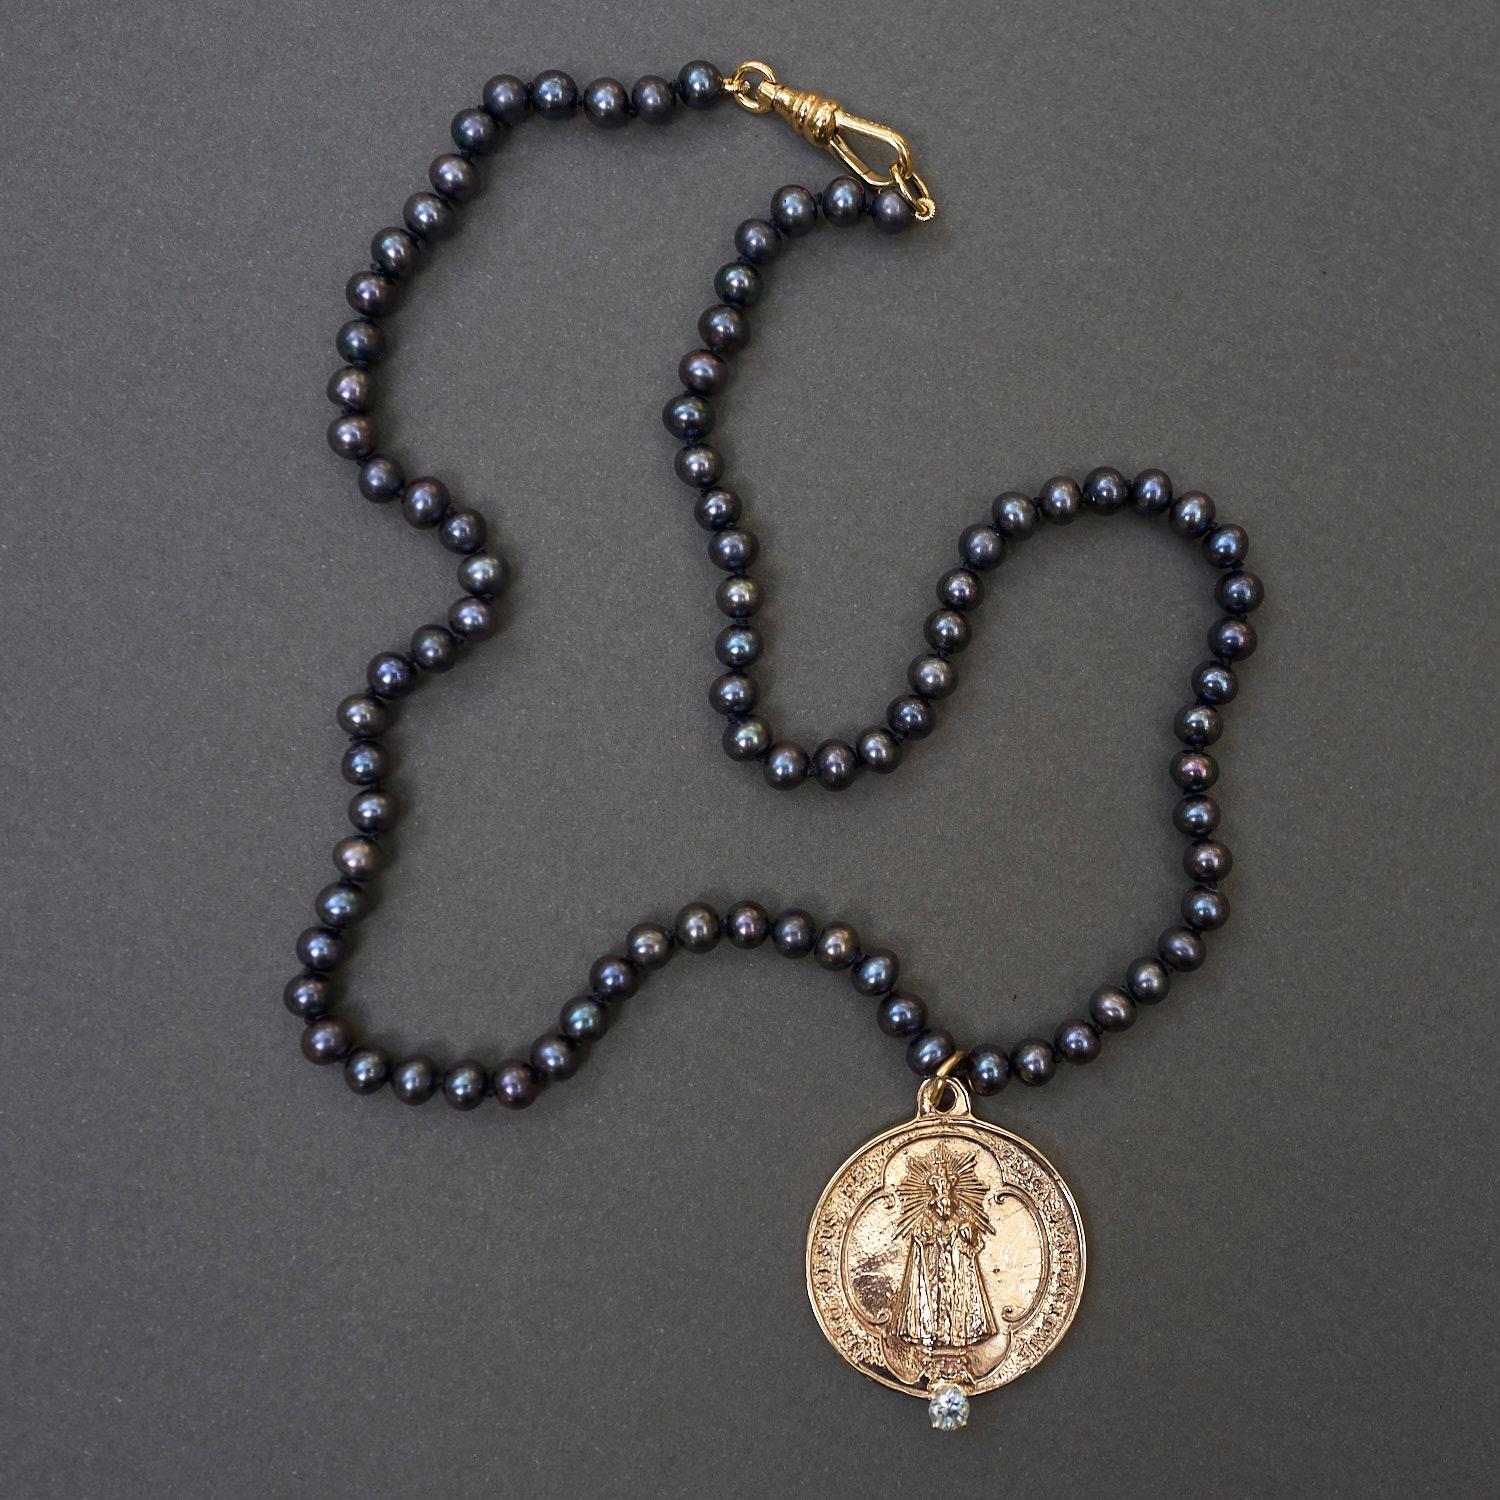 Aquamarin Schwarze Perlenkette  Medaille Halsband Bronze J Dauphin

Spirituelle Medaille Anhänger in Bronze mit Aquamarin auf einer stillen Schnur Süßwasser Perle Halskette mit Gold gefüllt Befunde J Dauphin

Symbole oder Medaillen können zu einem